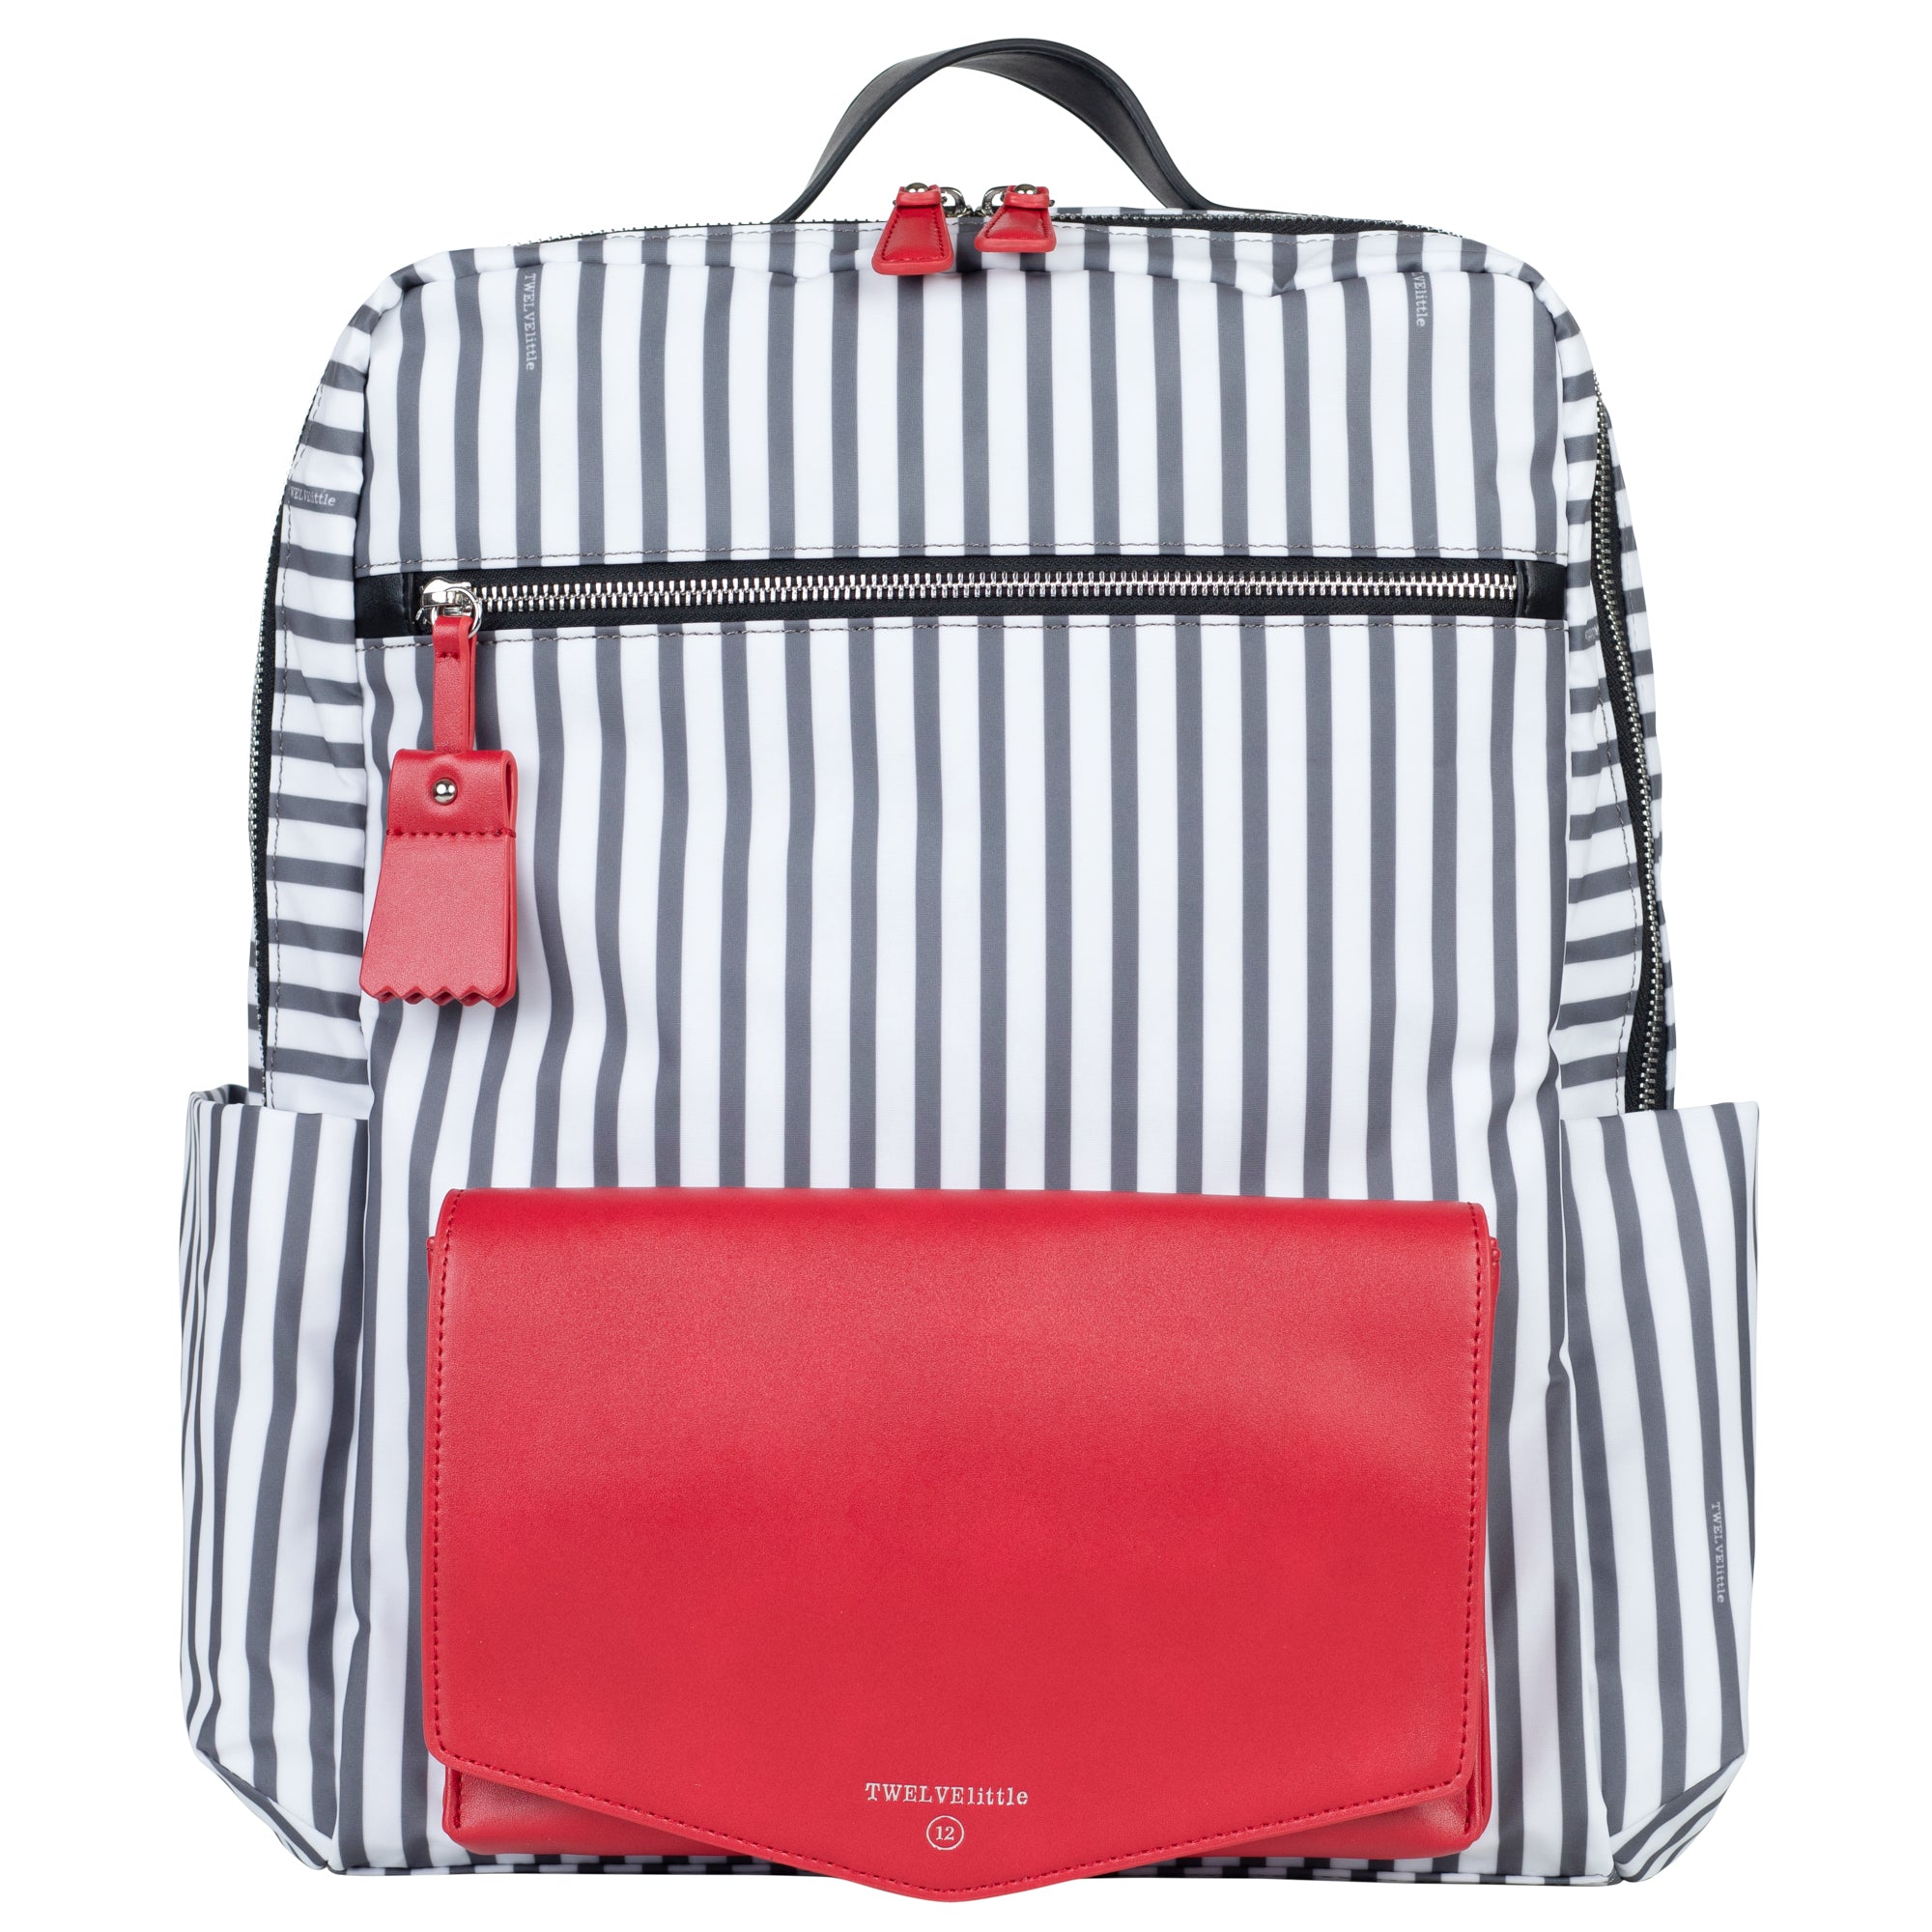 Peek-a-boo Backpack Diaper Bag - Stripe